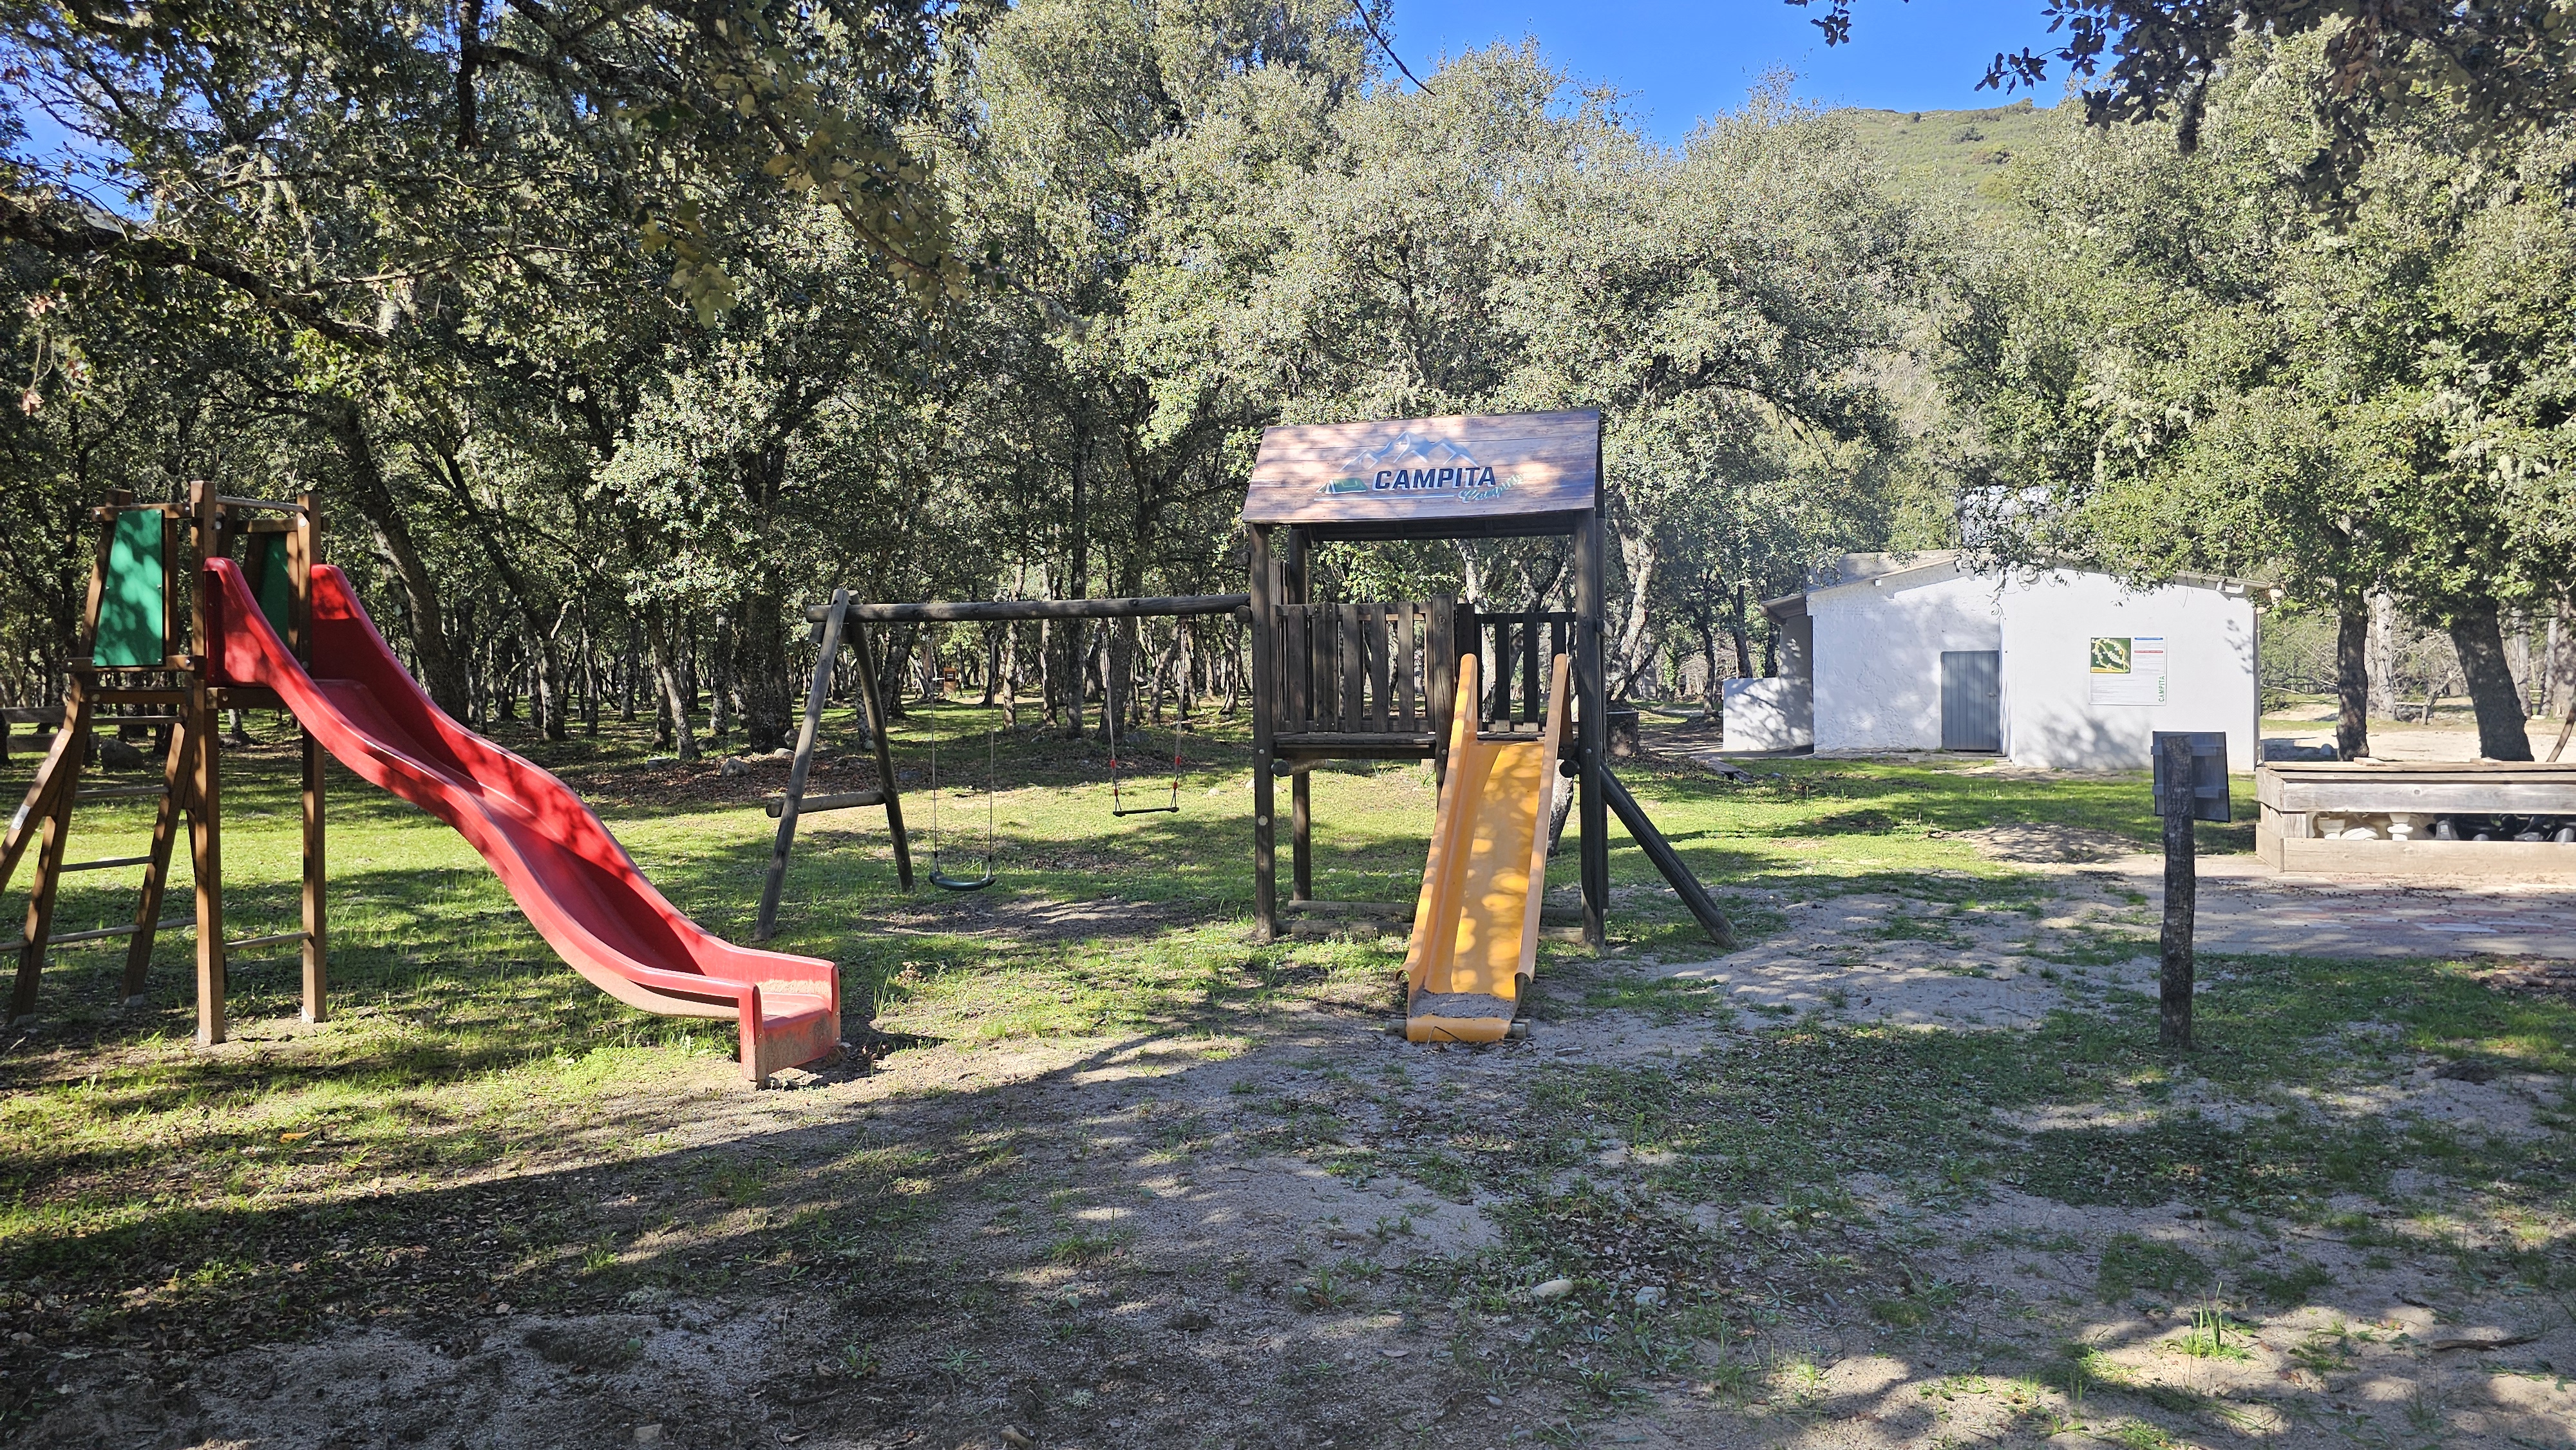 Spielplatz des Campingplatzes Campita mit Trampolinen, Rutschen, Schaukeln